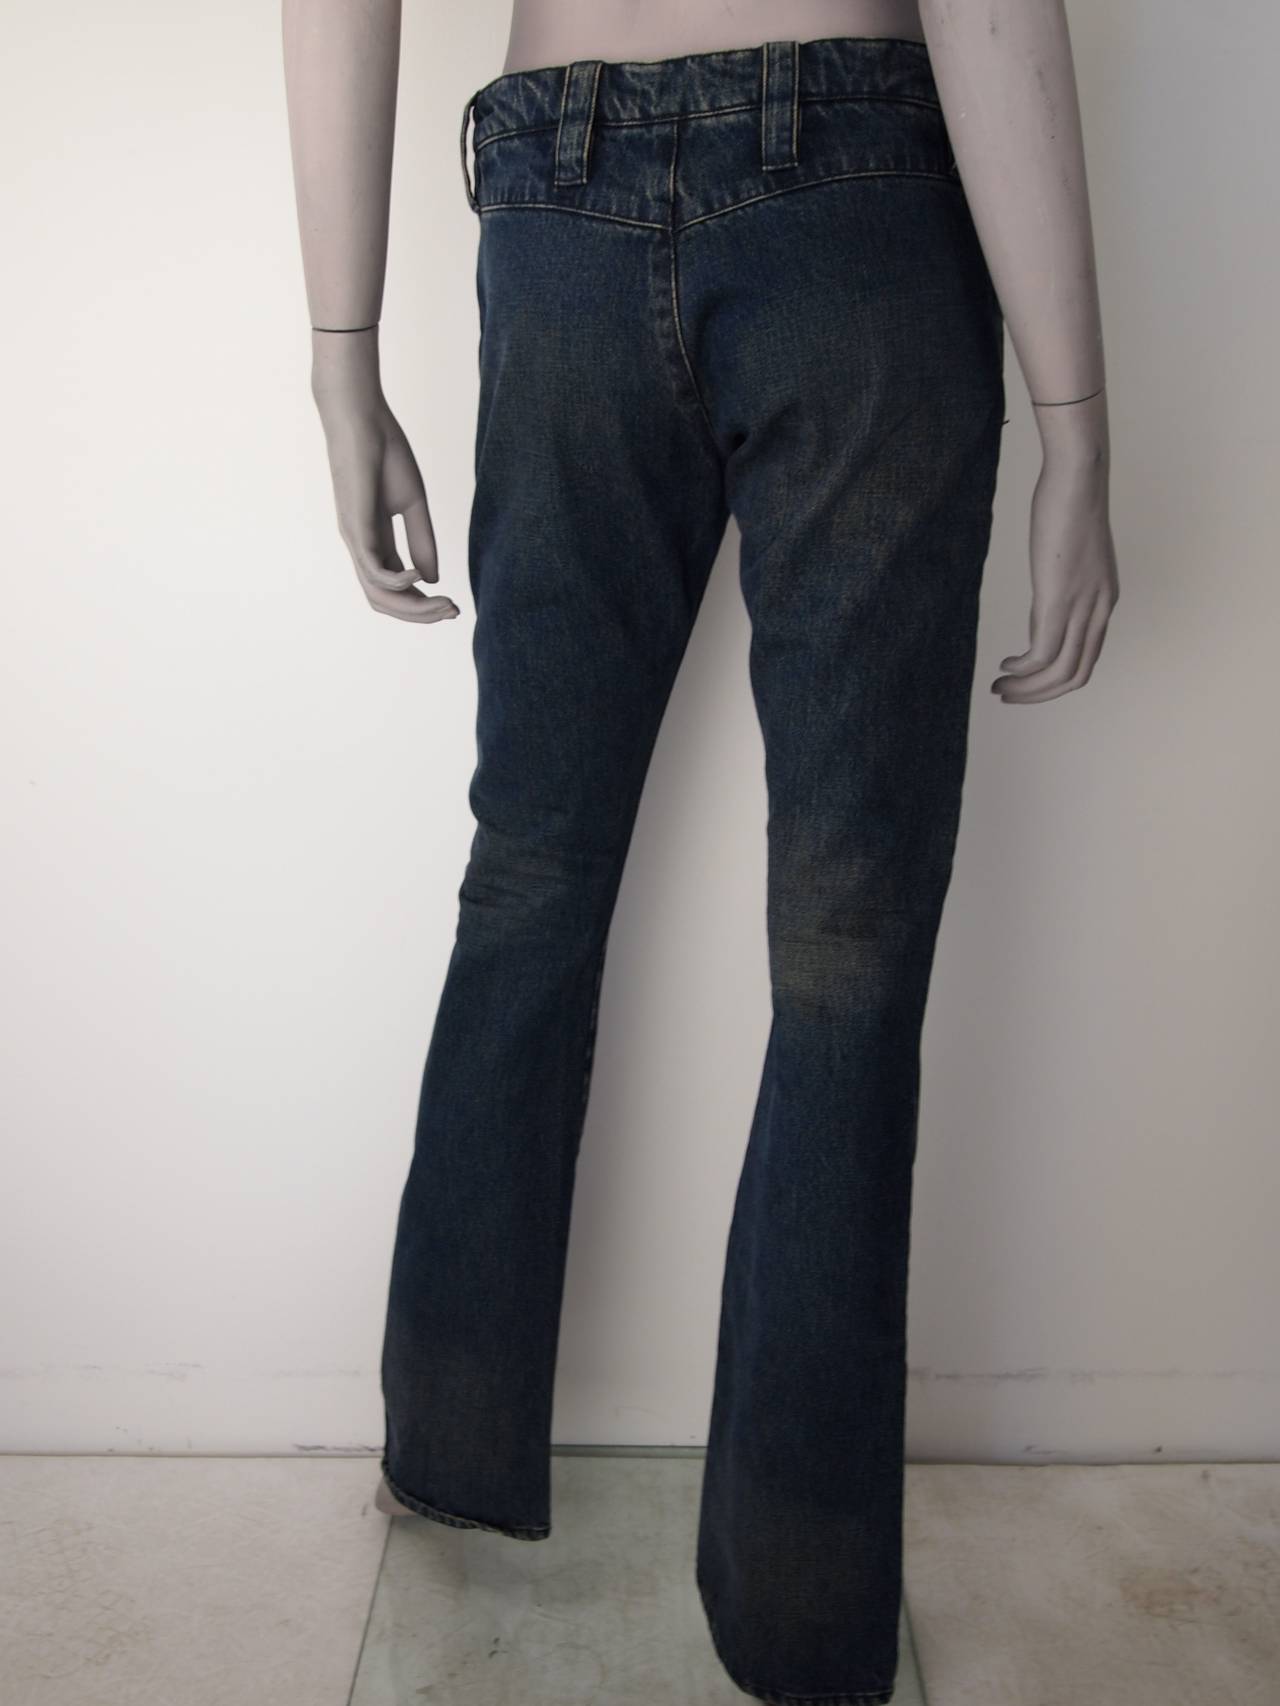 Henry Duarte Denim Pant Suit For Sale 2